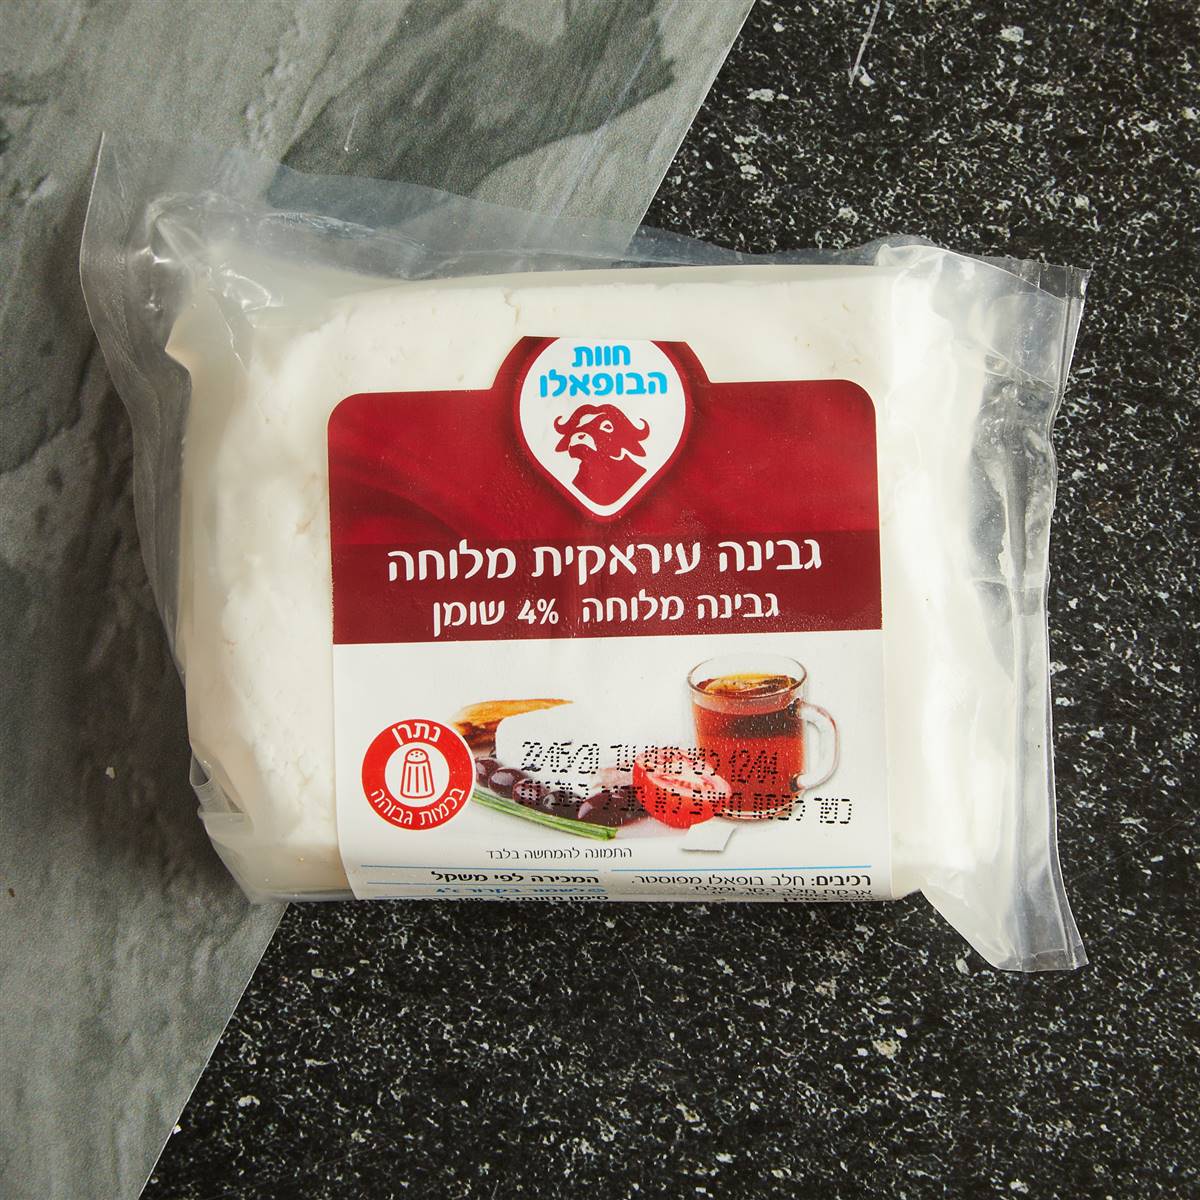 גבינה עירקית מלוחה %4- חוות הבופאלו